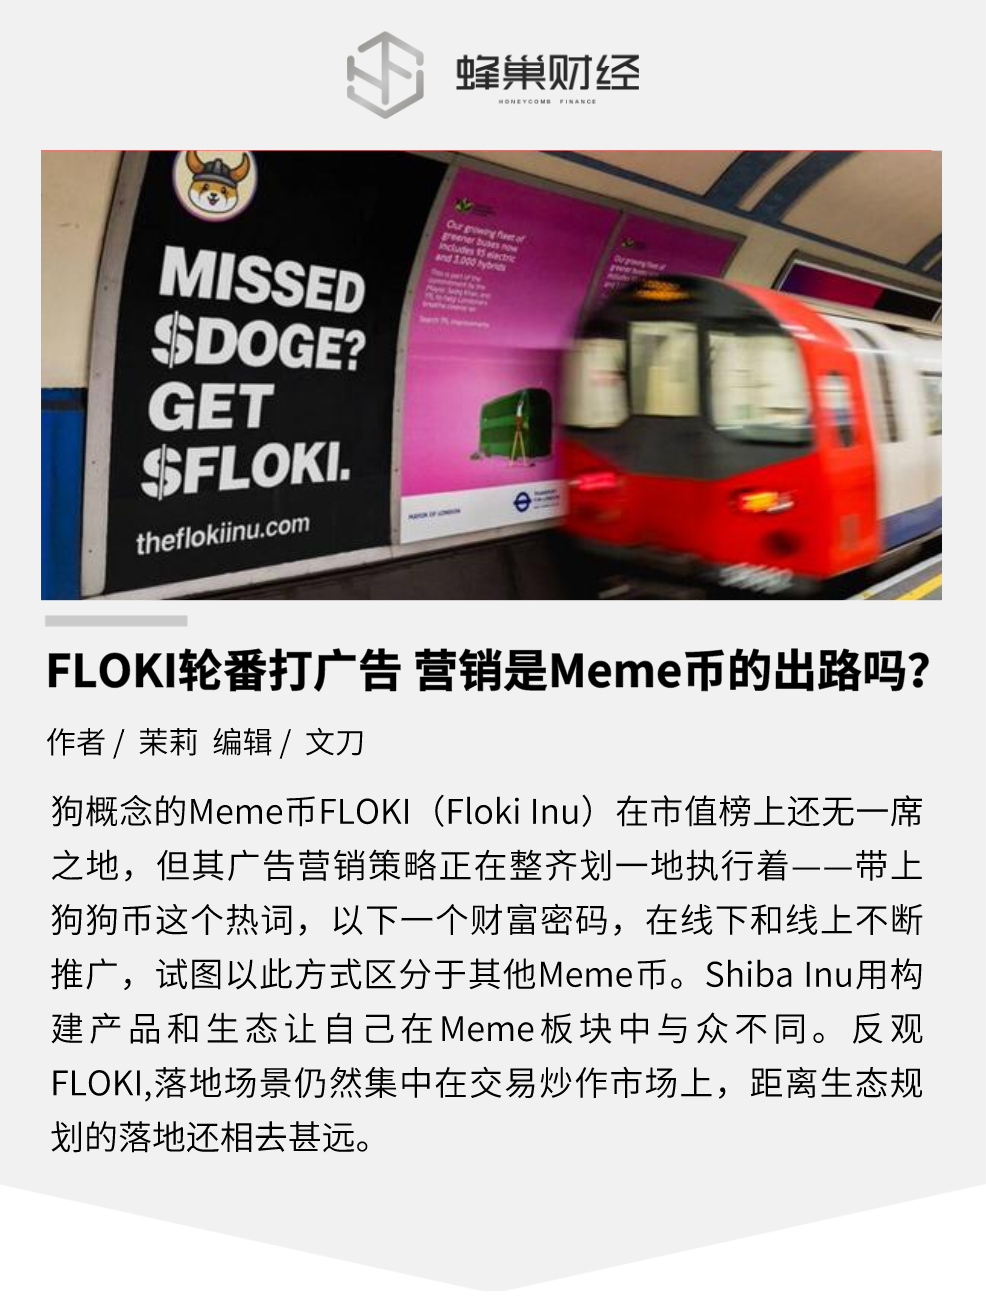 FLOKI 轮番打广告，营销是 Meme 币的出路吗？